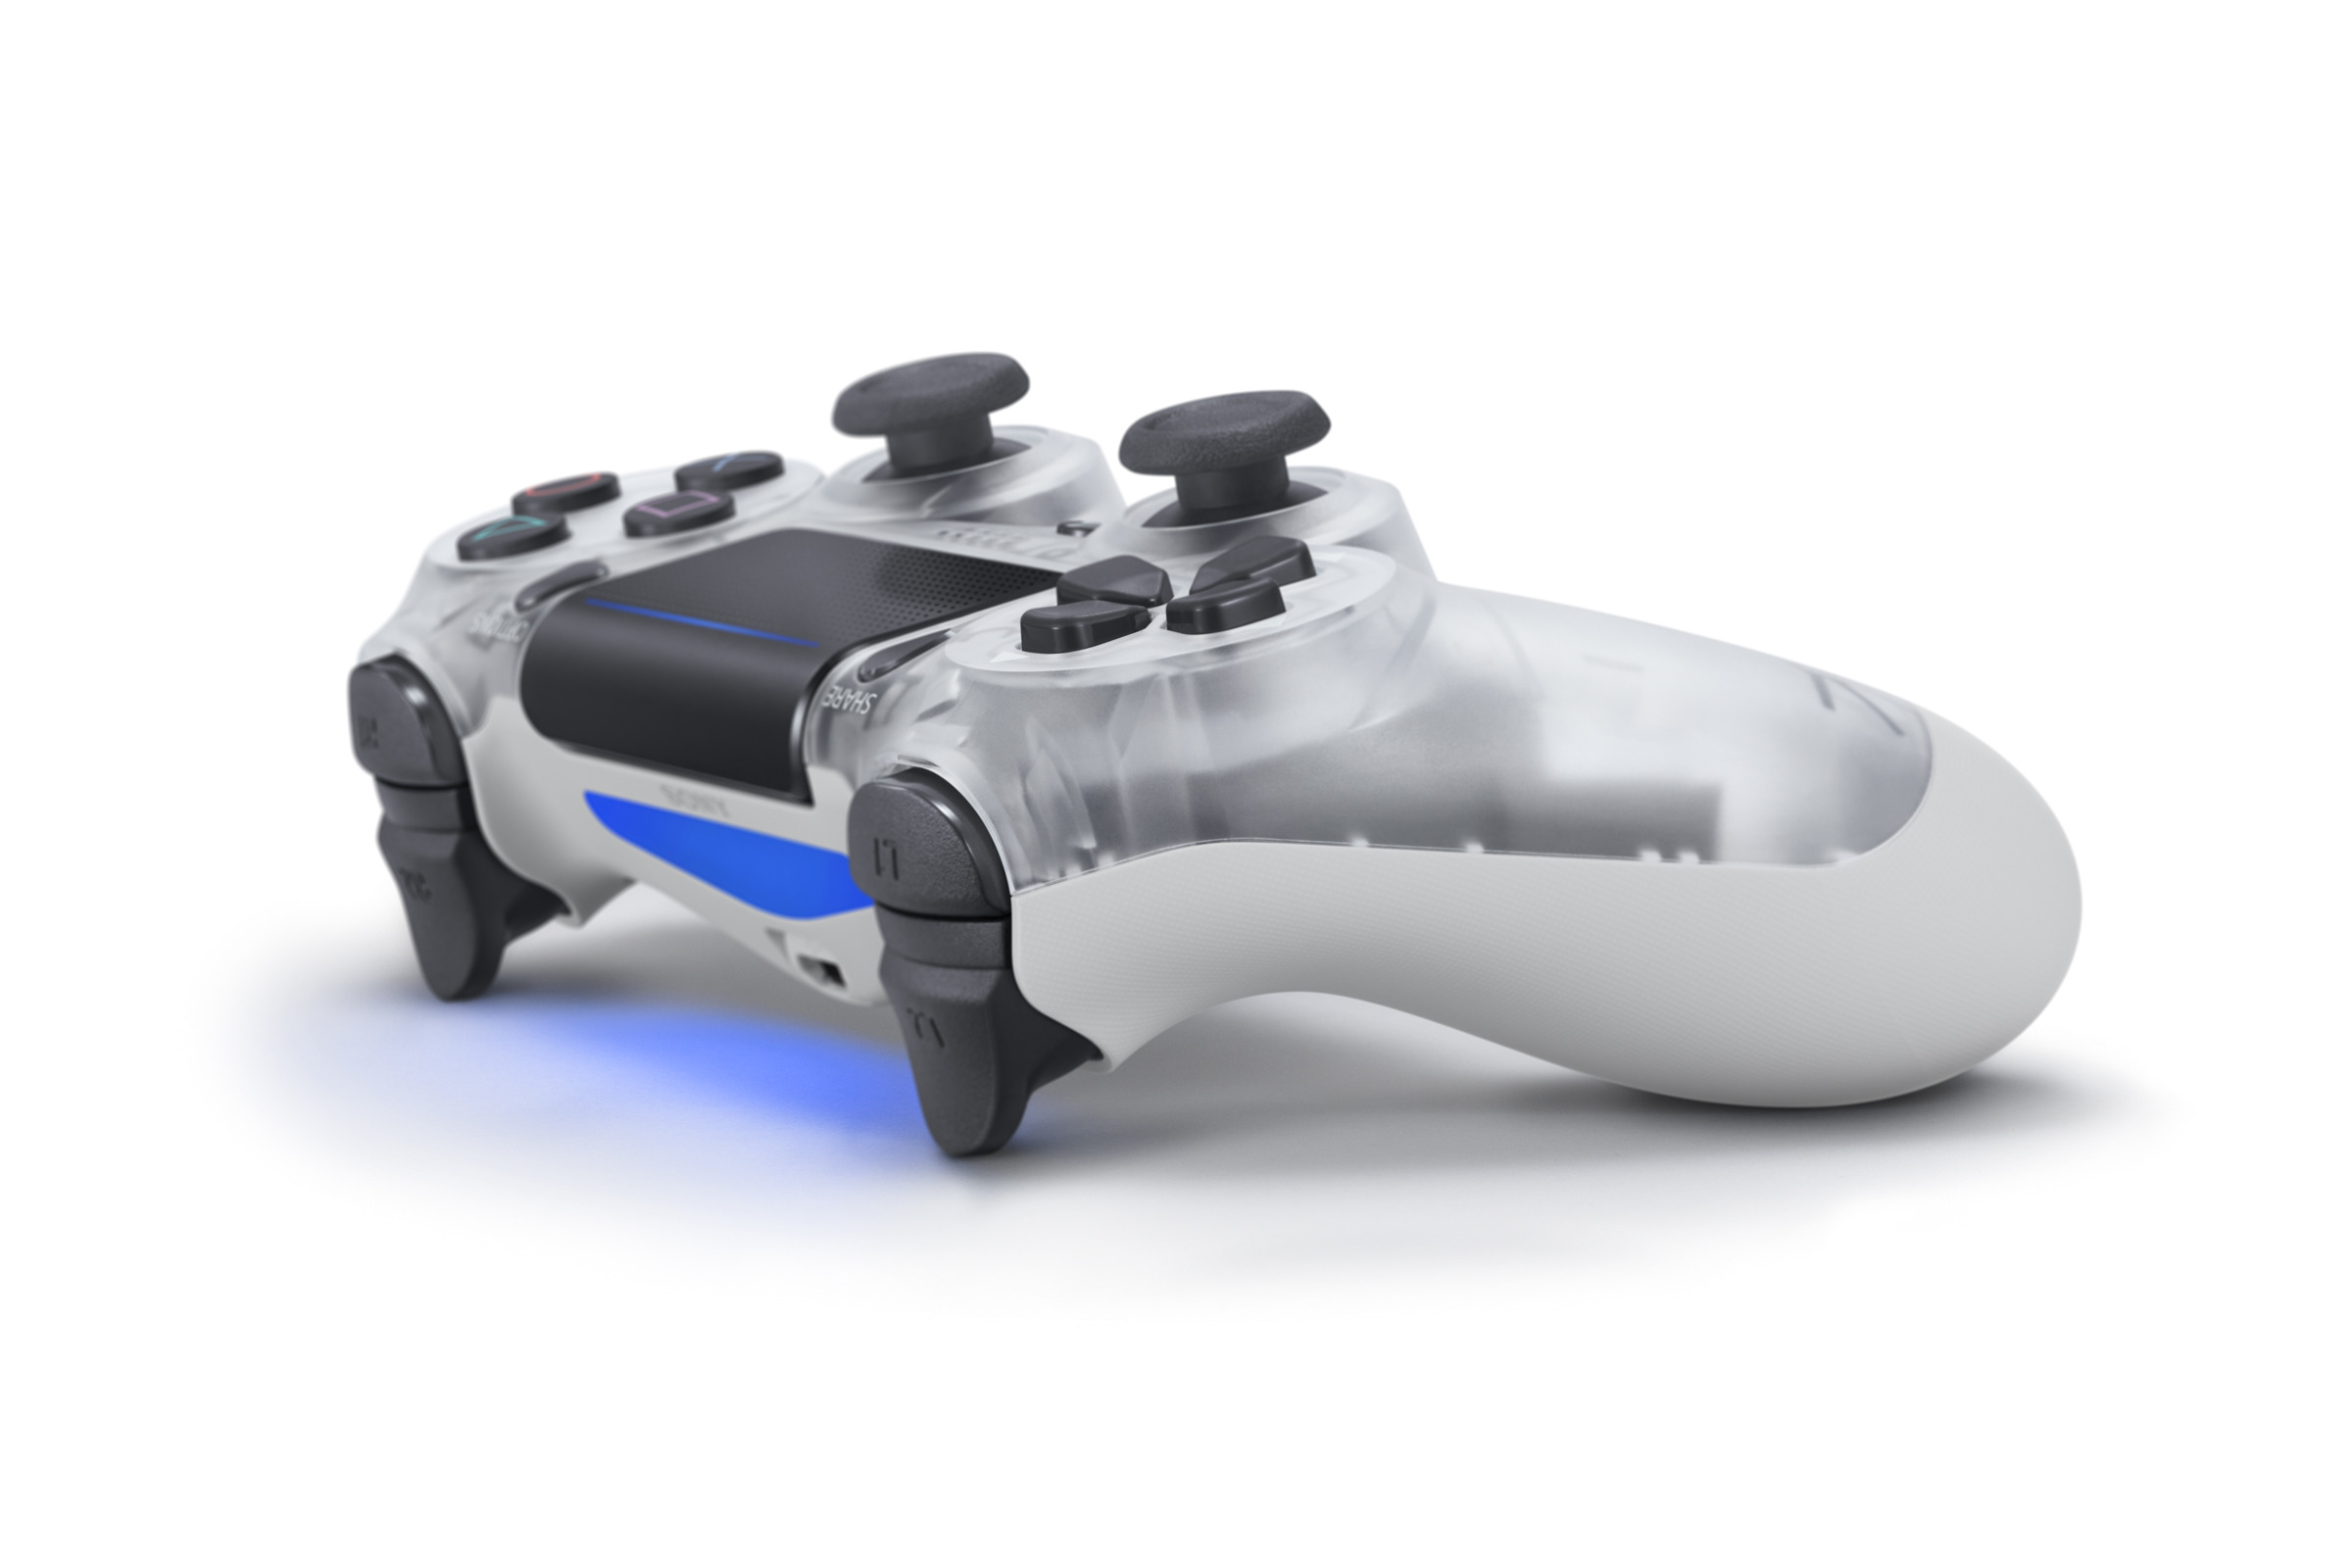 Sony vai lançar DualShock 4 translúcido inspirado em controle de PS1 01190400065403